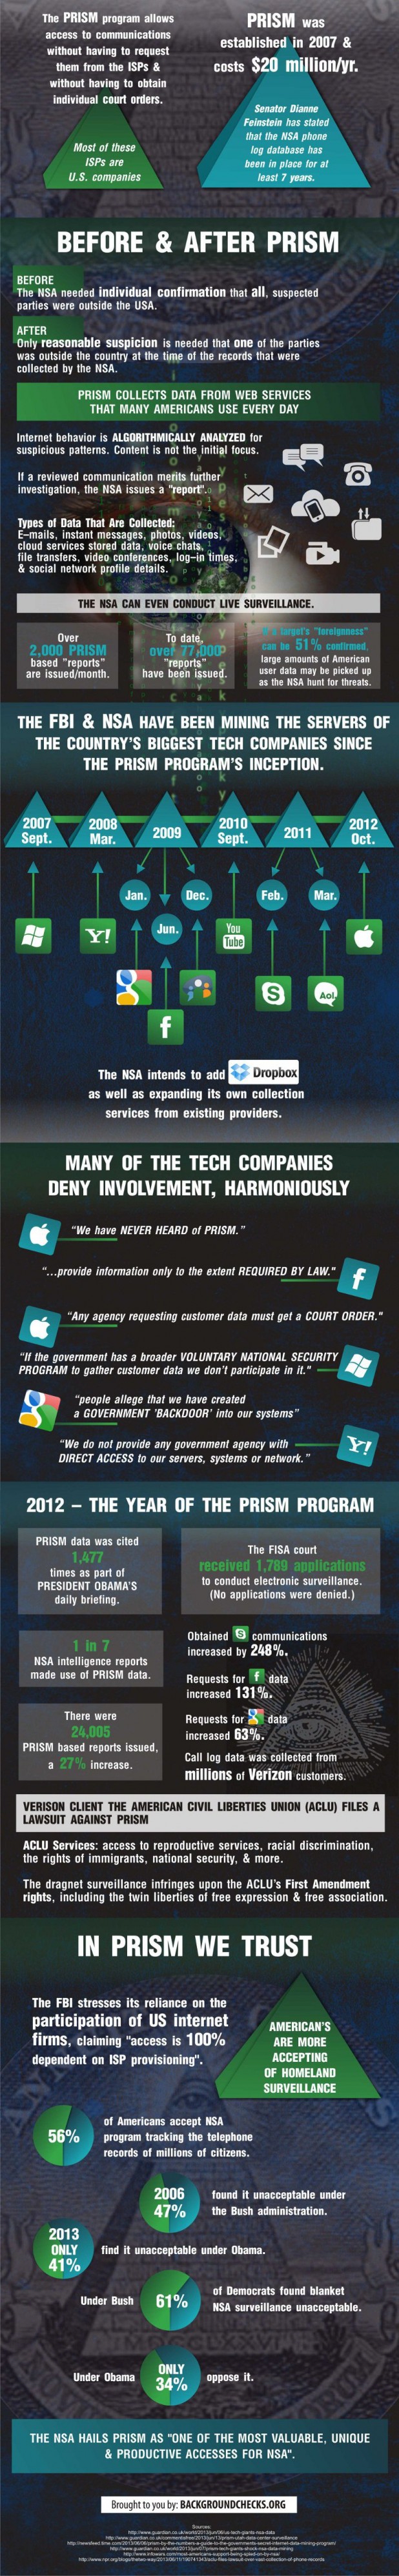 Eine umfangreiche Infografik über PRISM